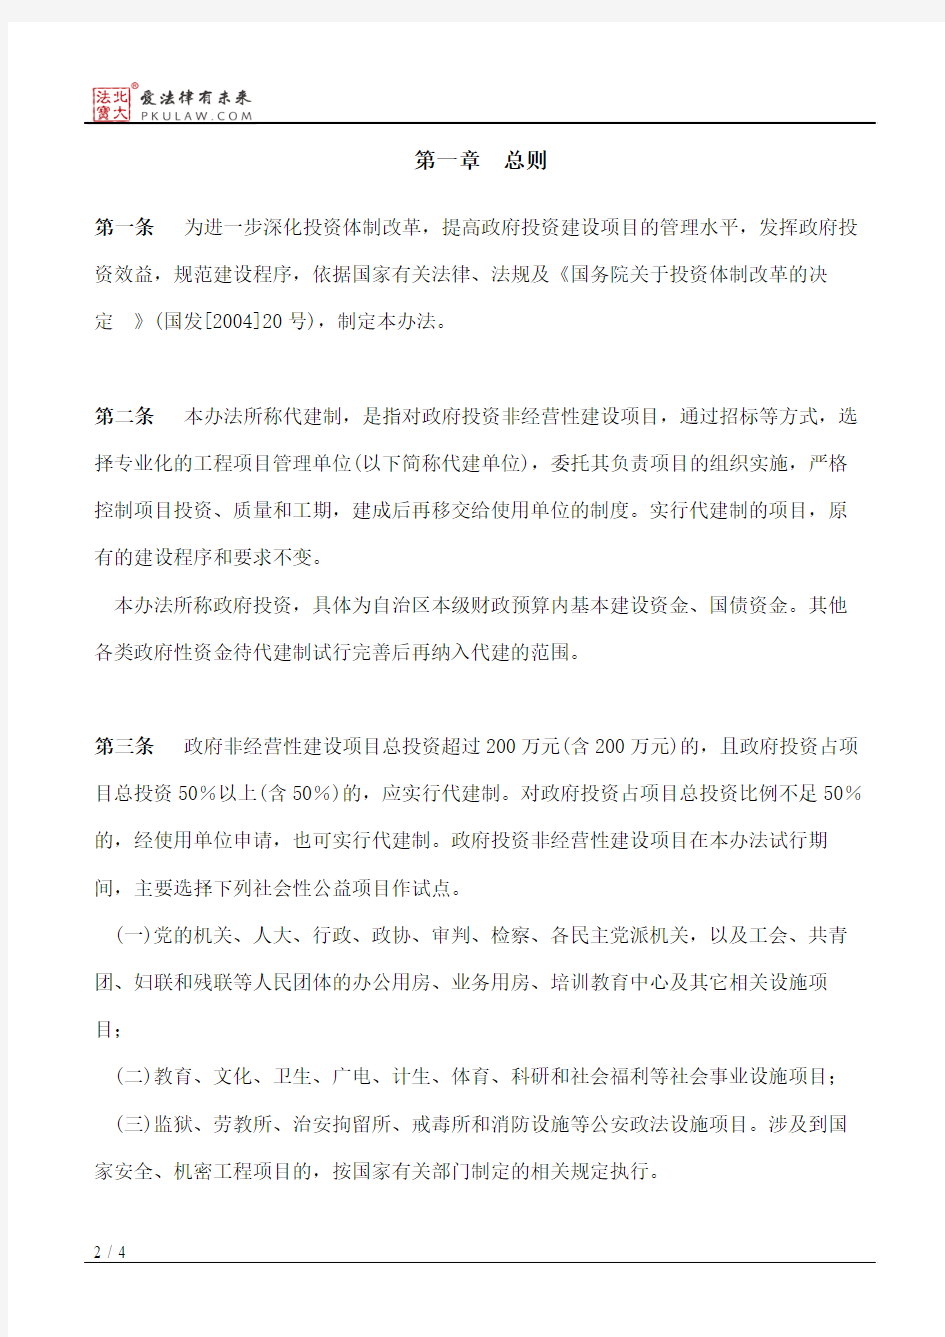 广西壮族自治区人民政府关于印发广西壮族自治区政府投资非经营性